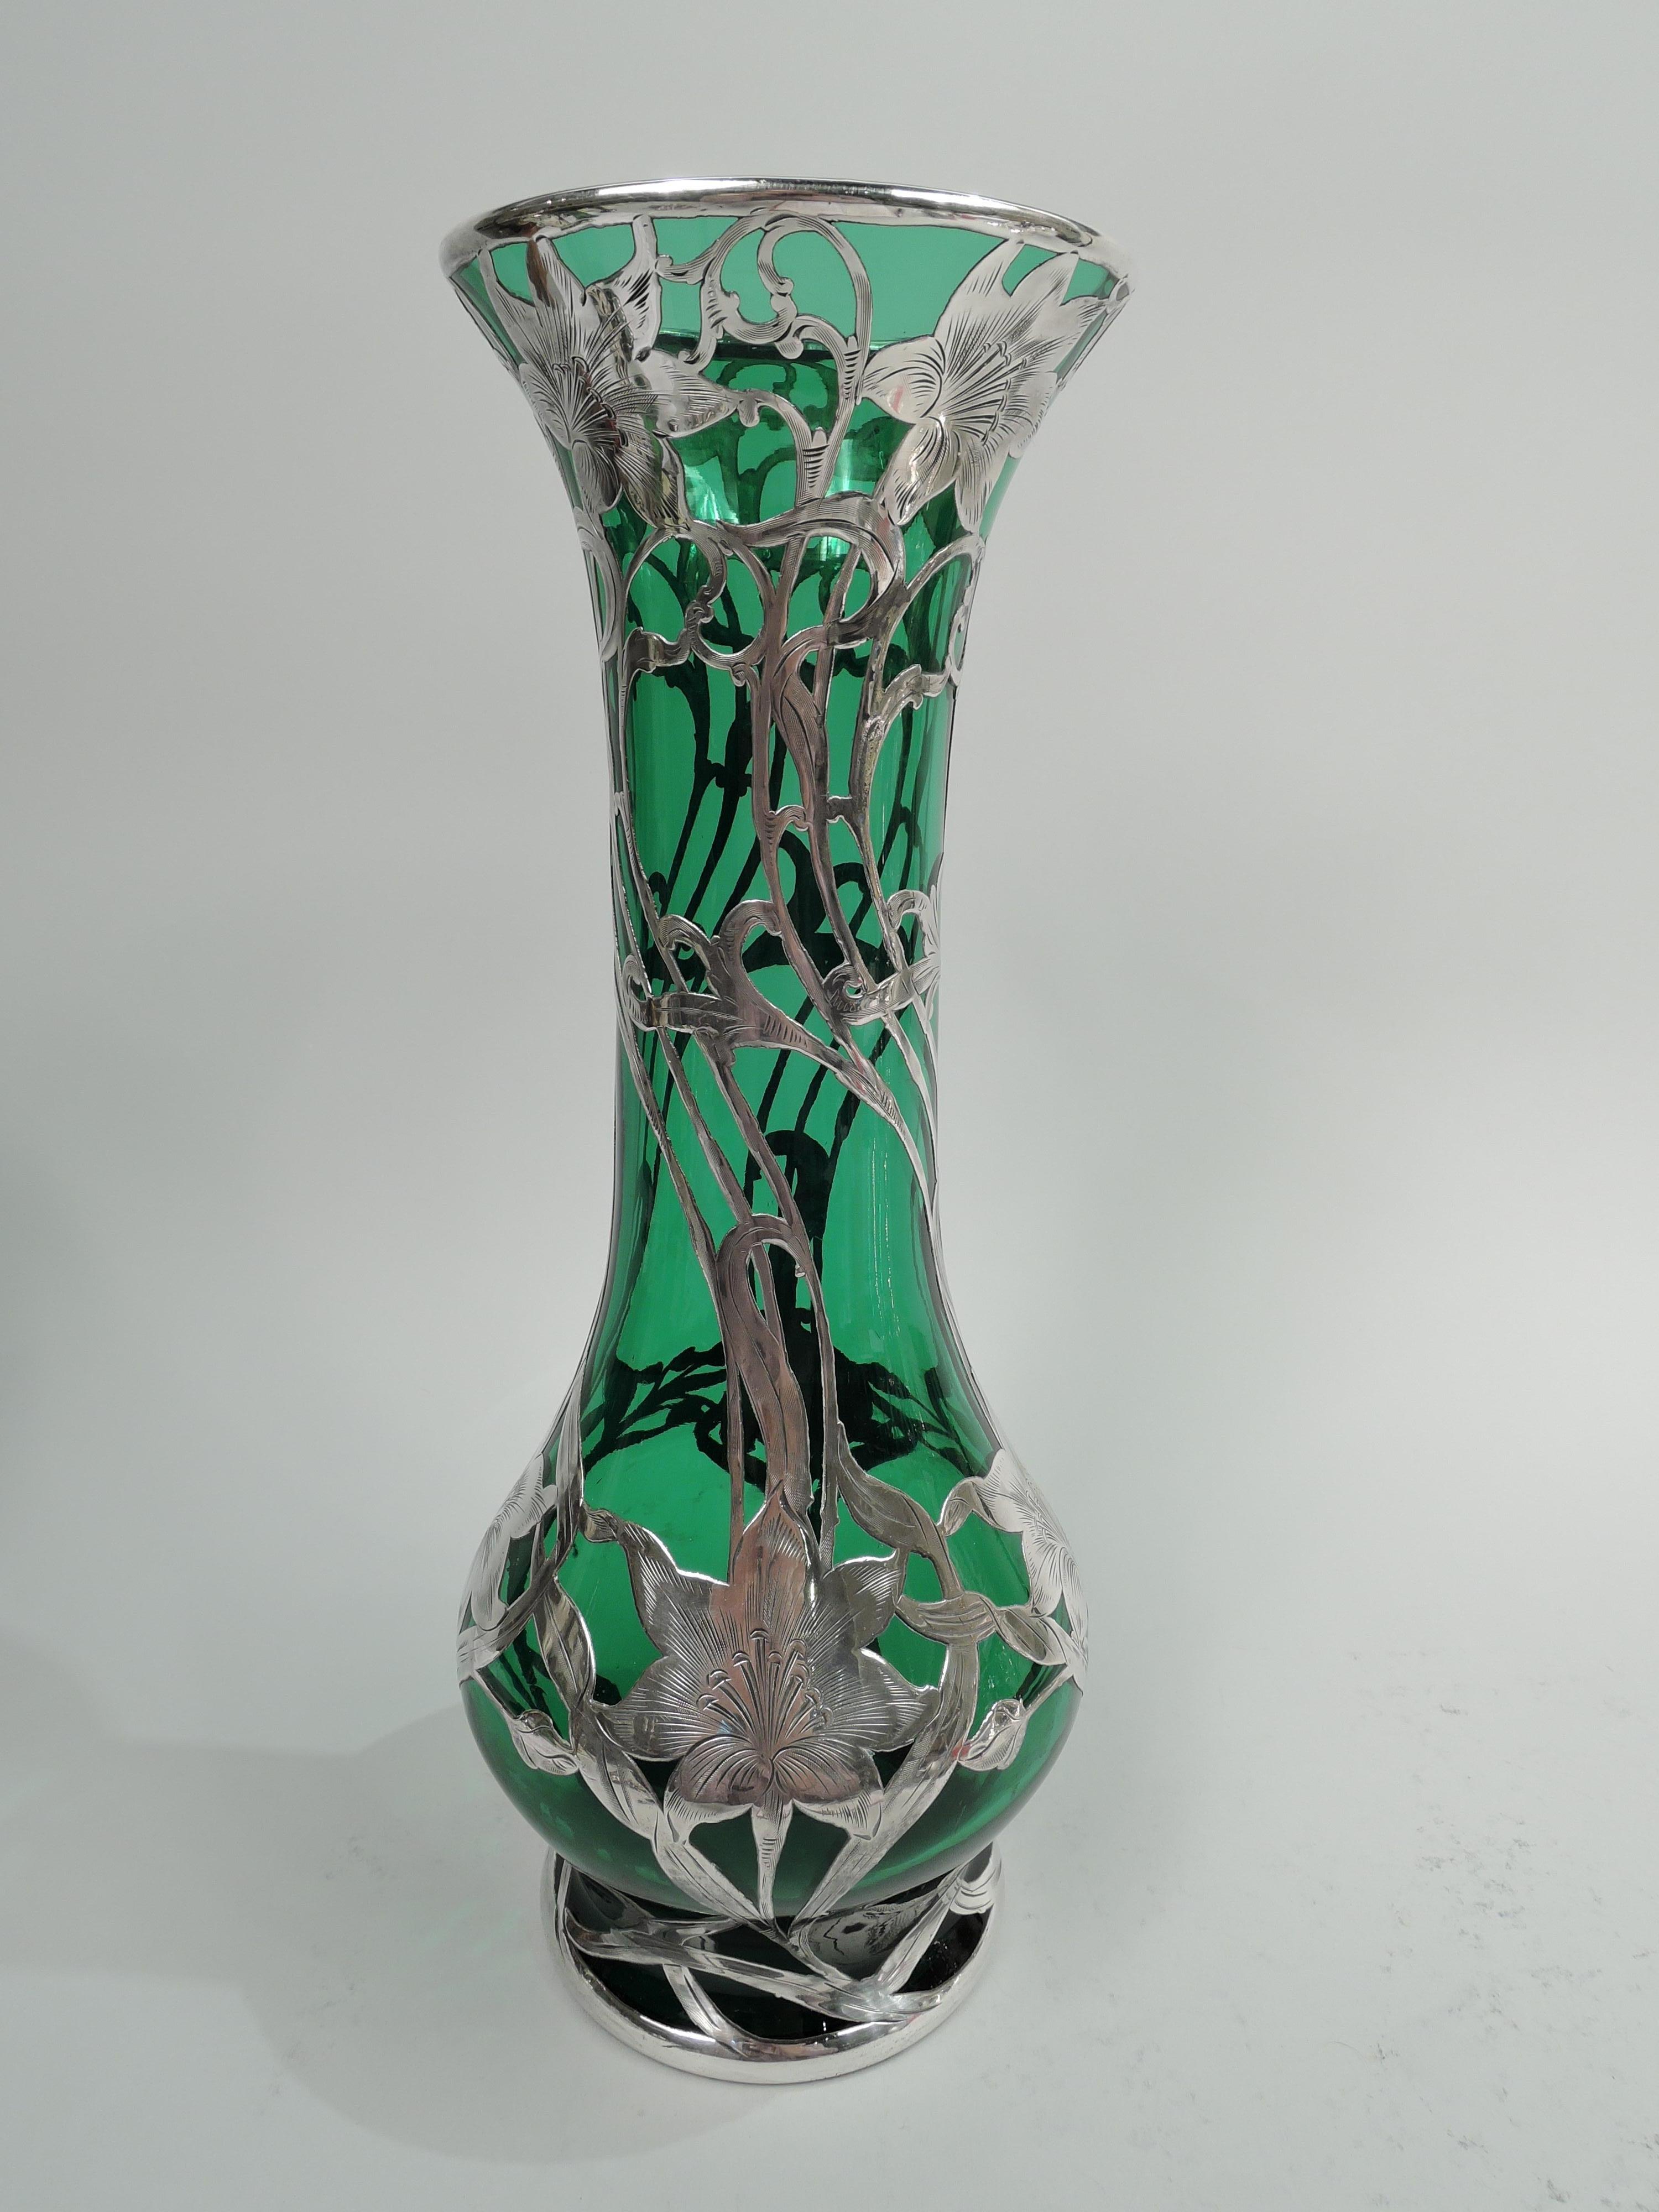 Vase en verre Art nouveau du début du siècle, avec un revêtement en argent gravé. Fabriqué par Alvin Corporation à Providence. Grand balustre à bord évasé et pied court. Superposition en forme de vrilles torsadées entrelacées et superposées avec des